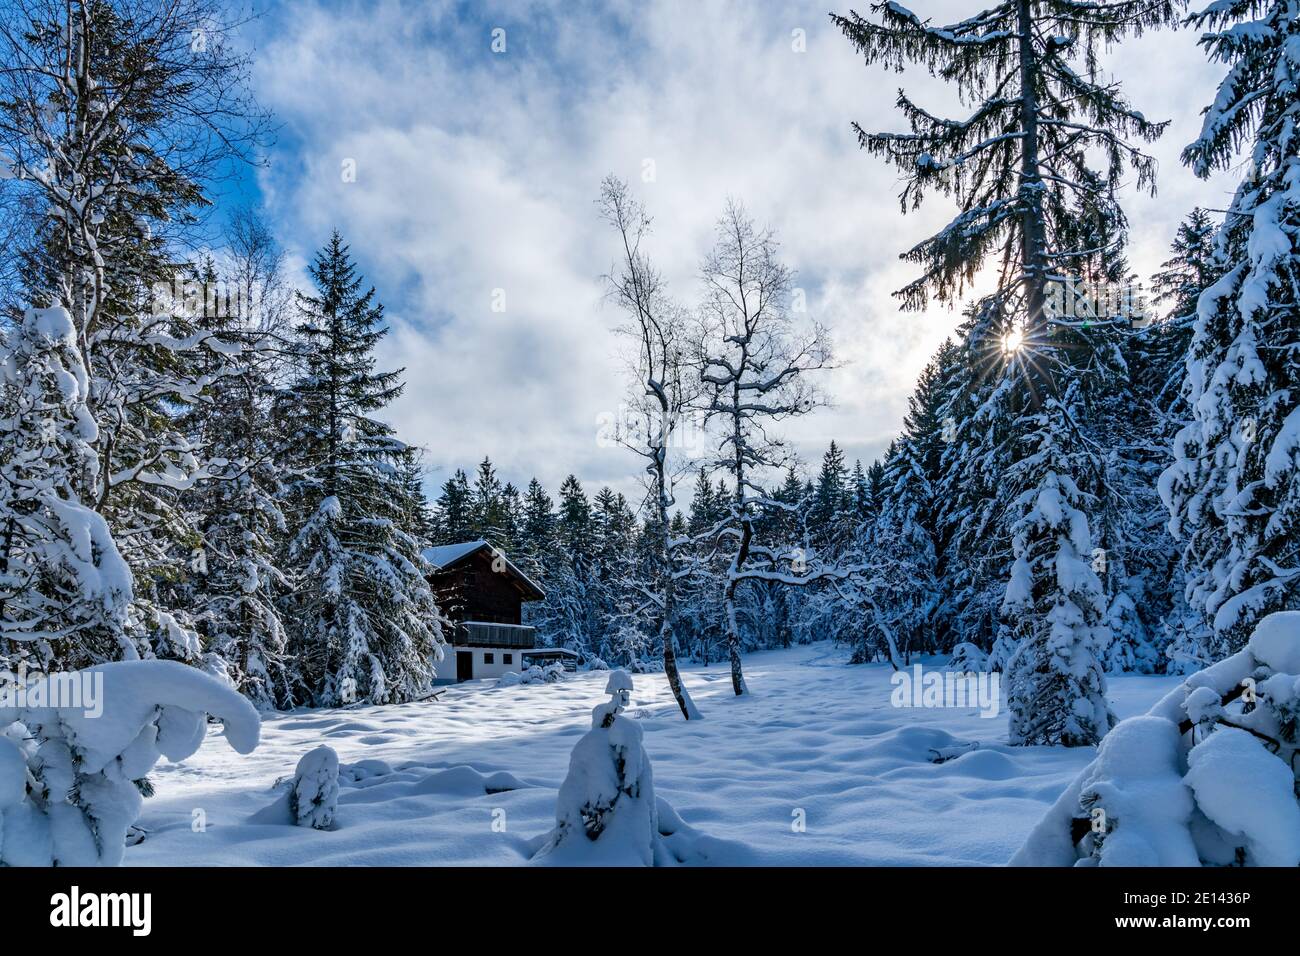 Frisch verschneite Landschaft mit Haus am Waldrand. Verschneite Landschaft mit einem Ferienhaus am Waldrand, ein sonniger Tag. Winterwunderland Österreich Stockfoto